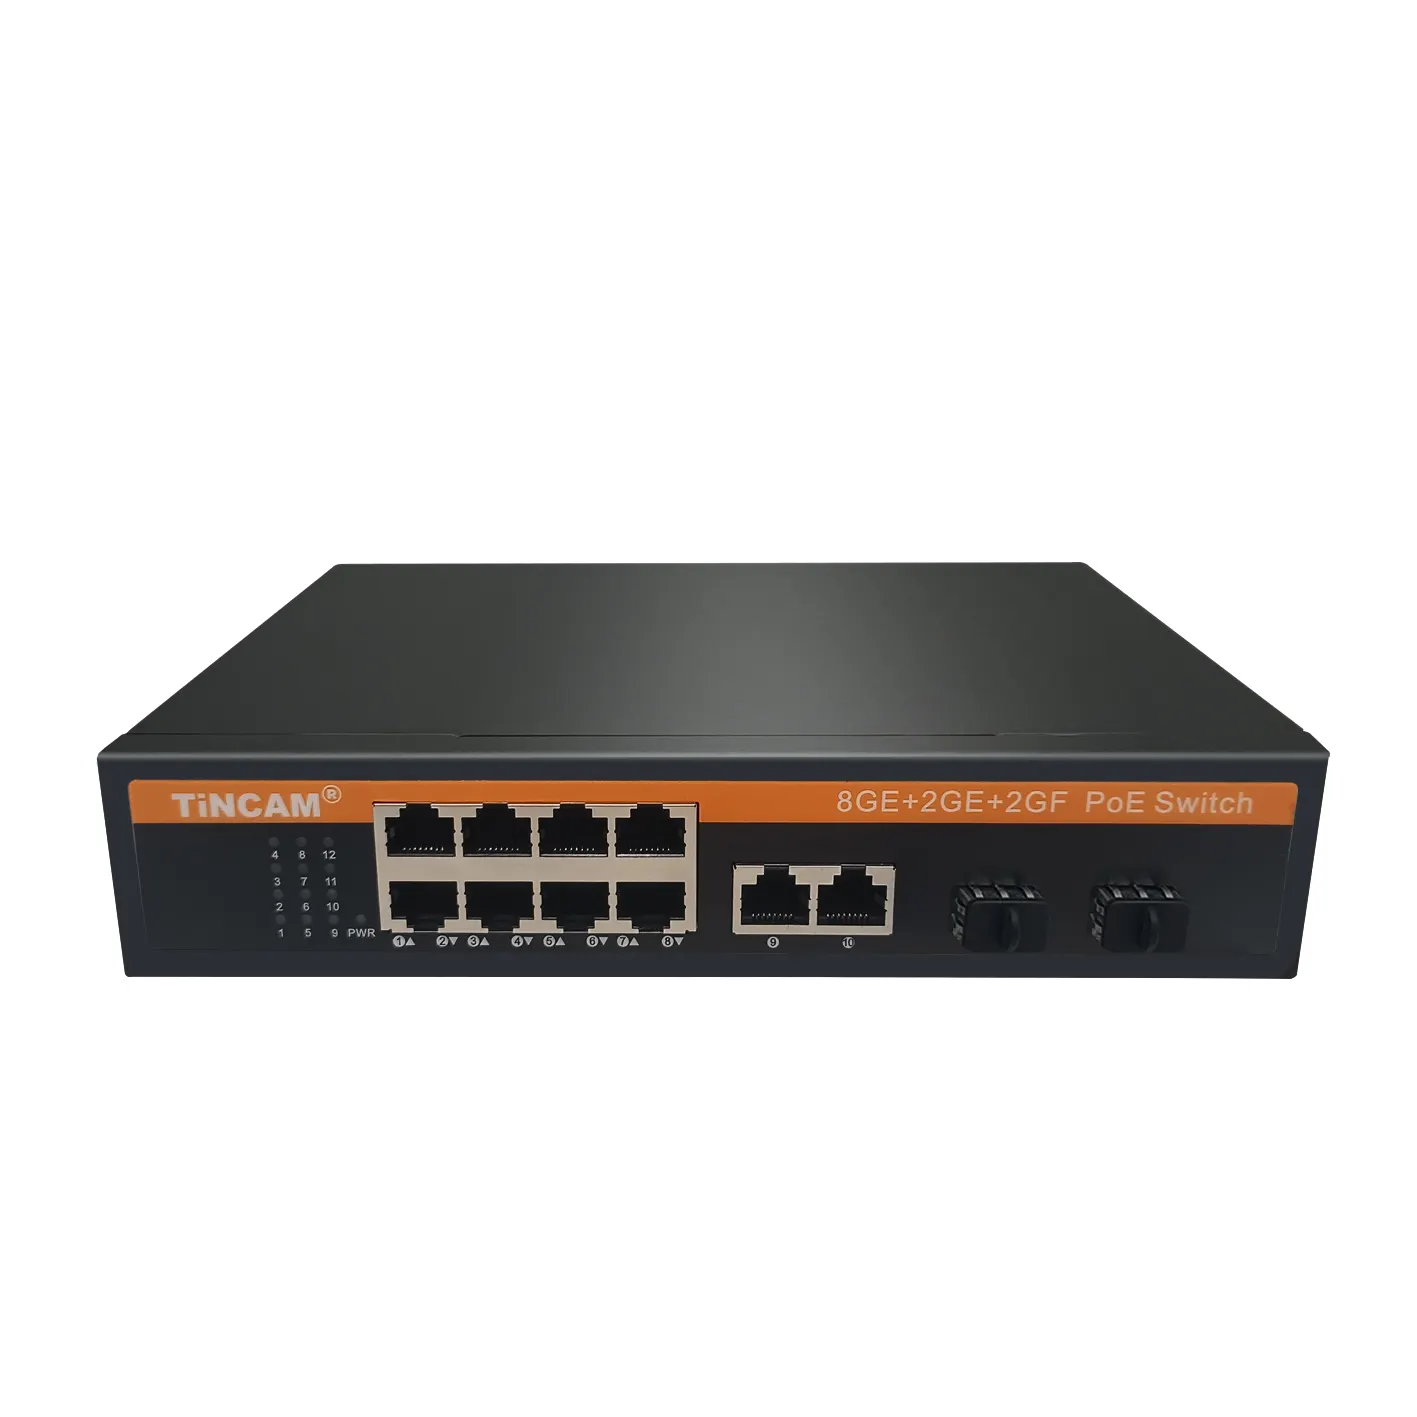 TiNCAM Gigabit 8 * Poe + 2 * Uplink + 2 * Porta SFP Poe Switch 120W Fibra Não Gerenciada para Ethernet Conversor Poe Interruptor Inteligente de Potência embutido